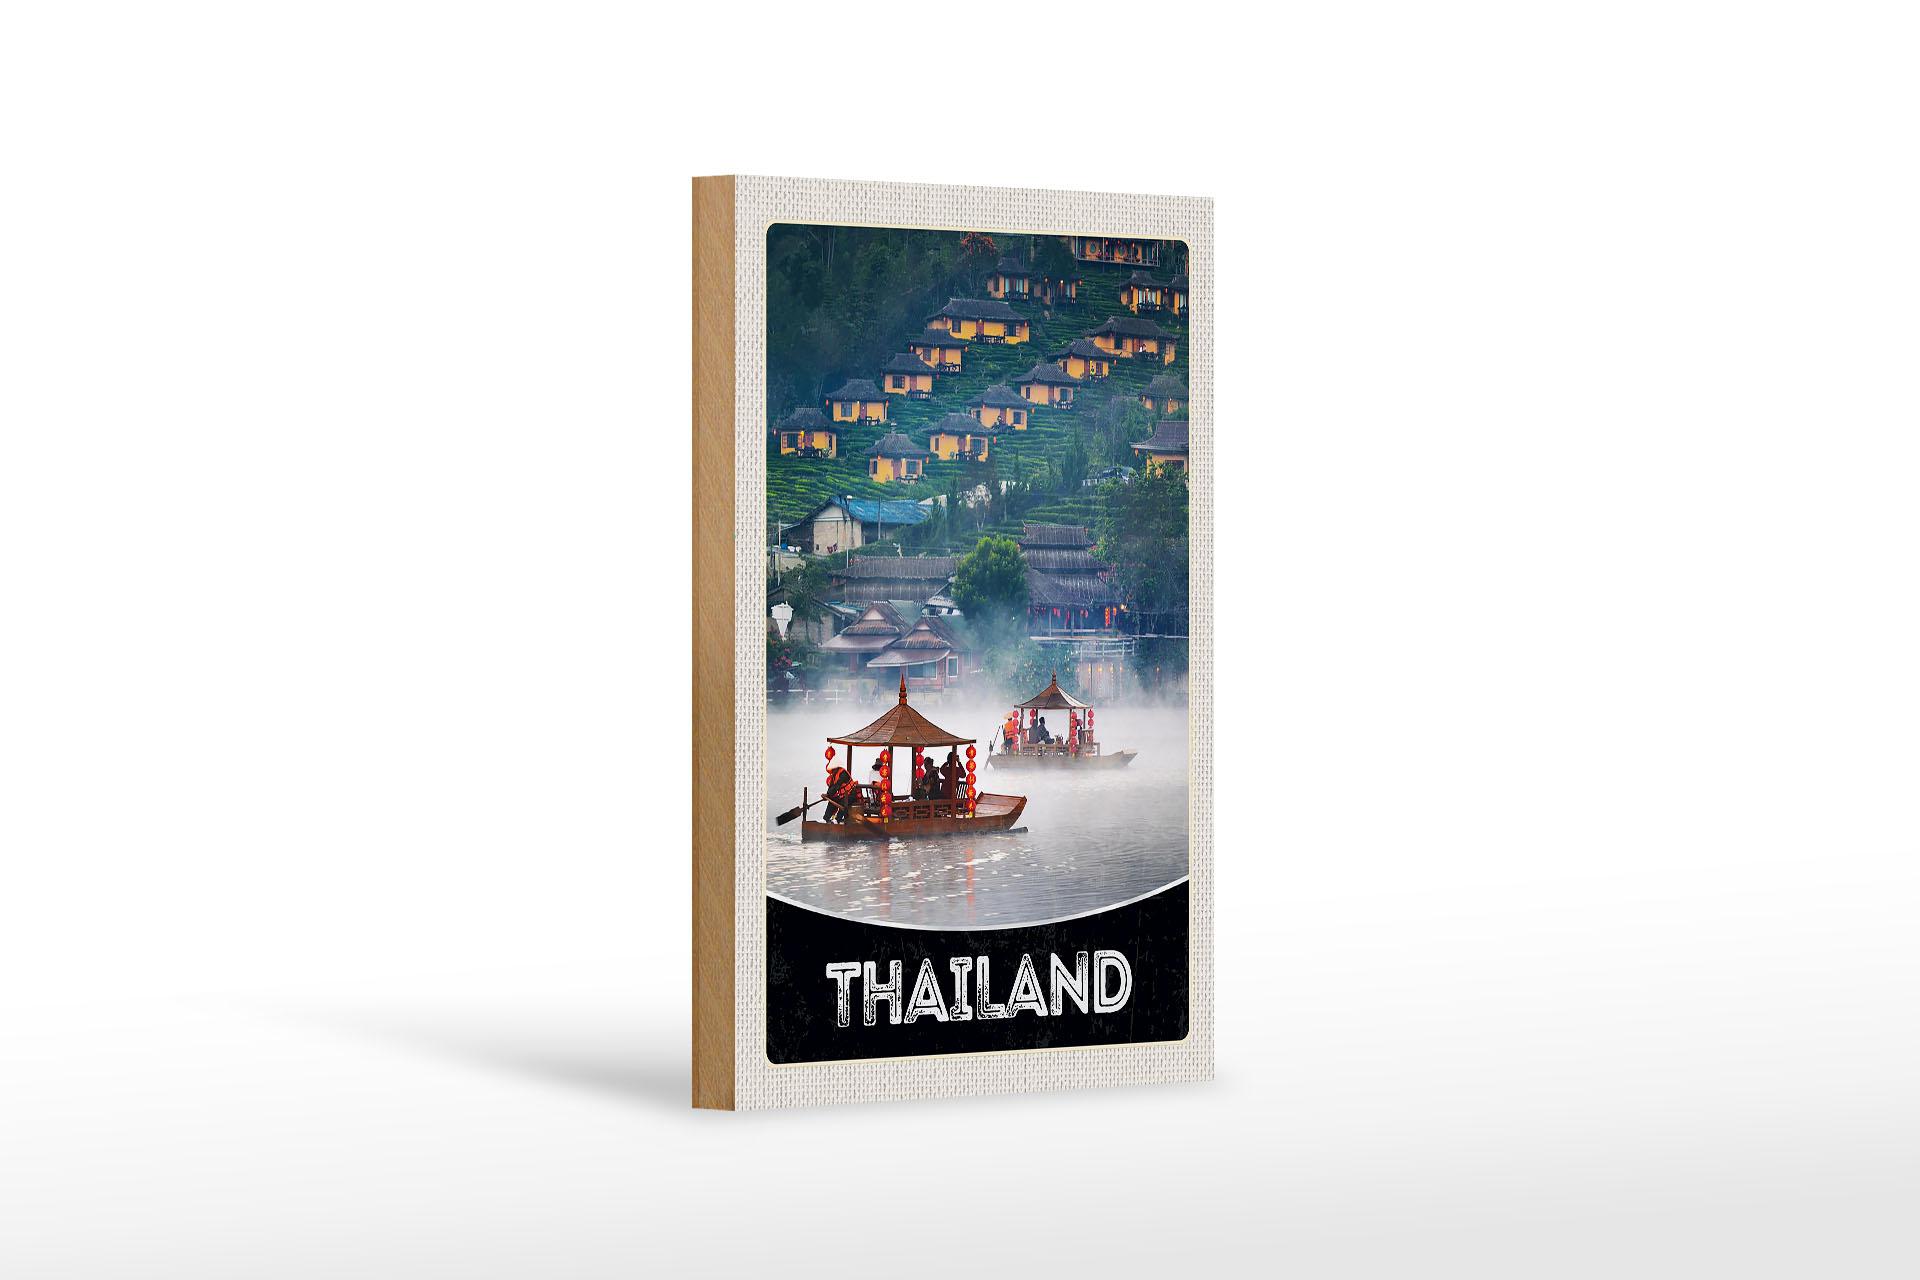 Holzschild Reise 12x18 cm Thailand Asien Fluss Natur Häuser Boot Schild